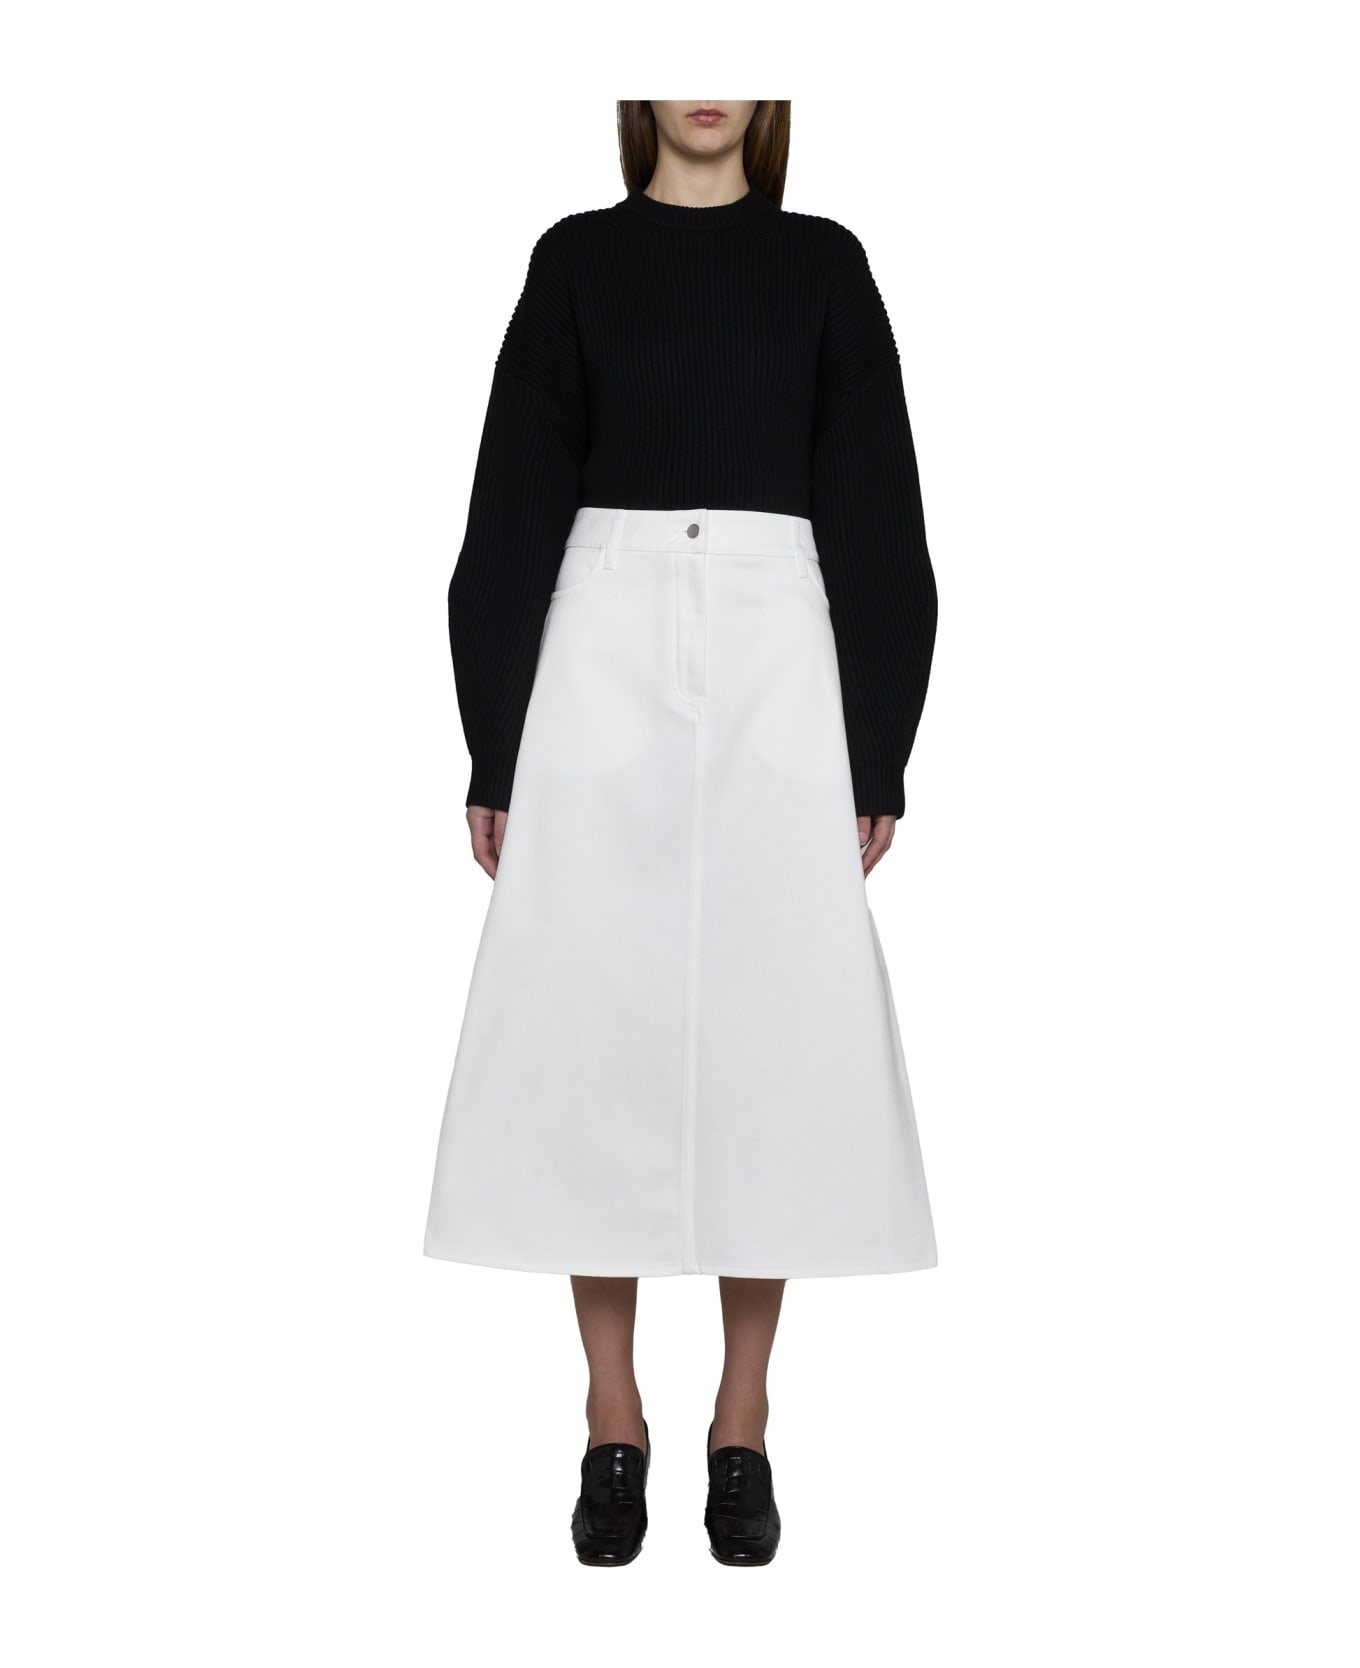 Studio Nicholson Skirt - White